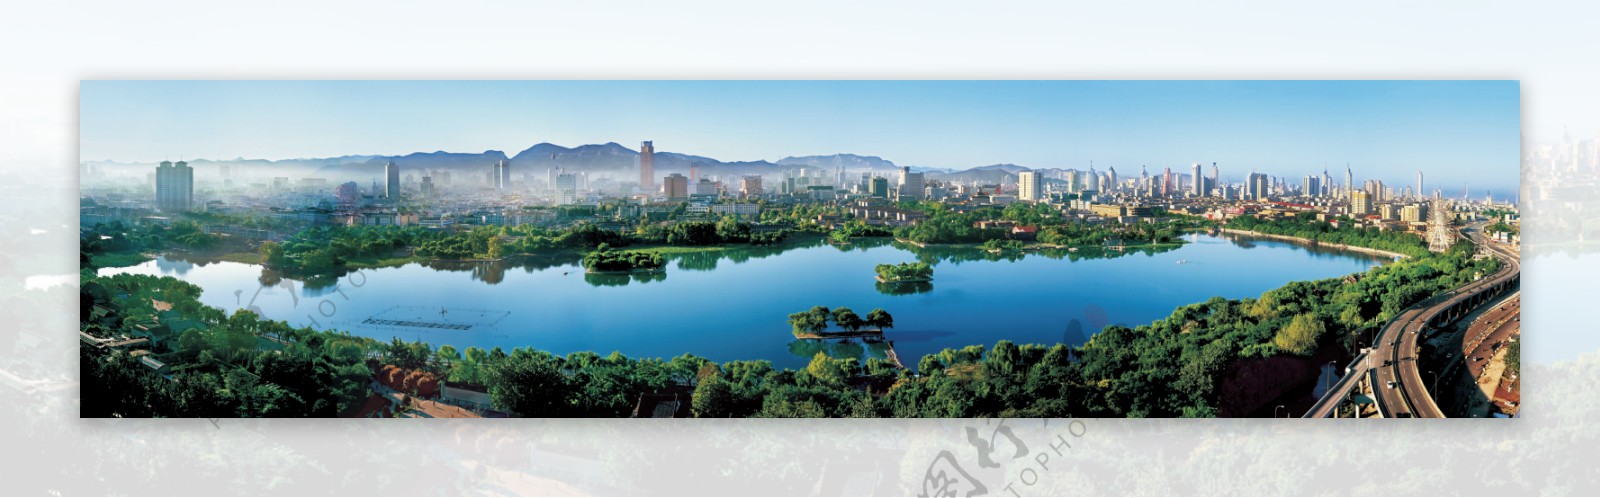 大明湖全景图片